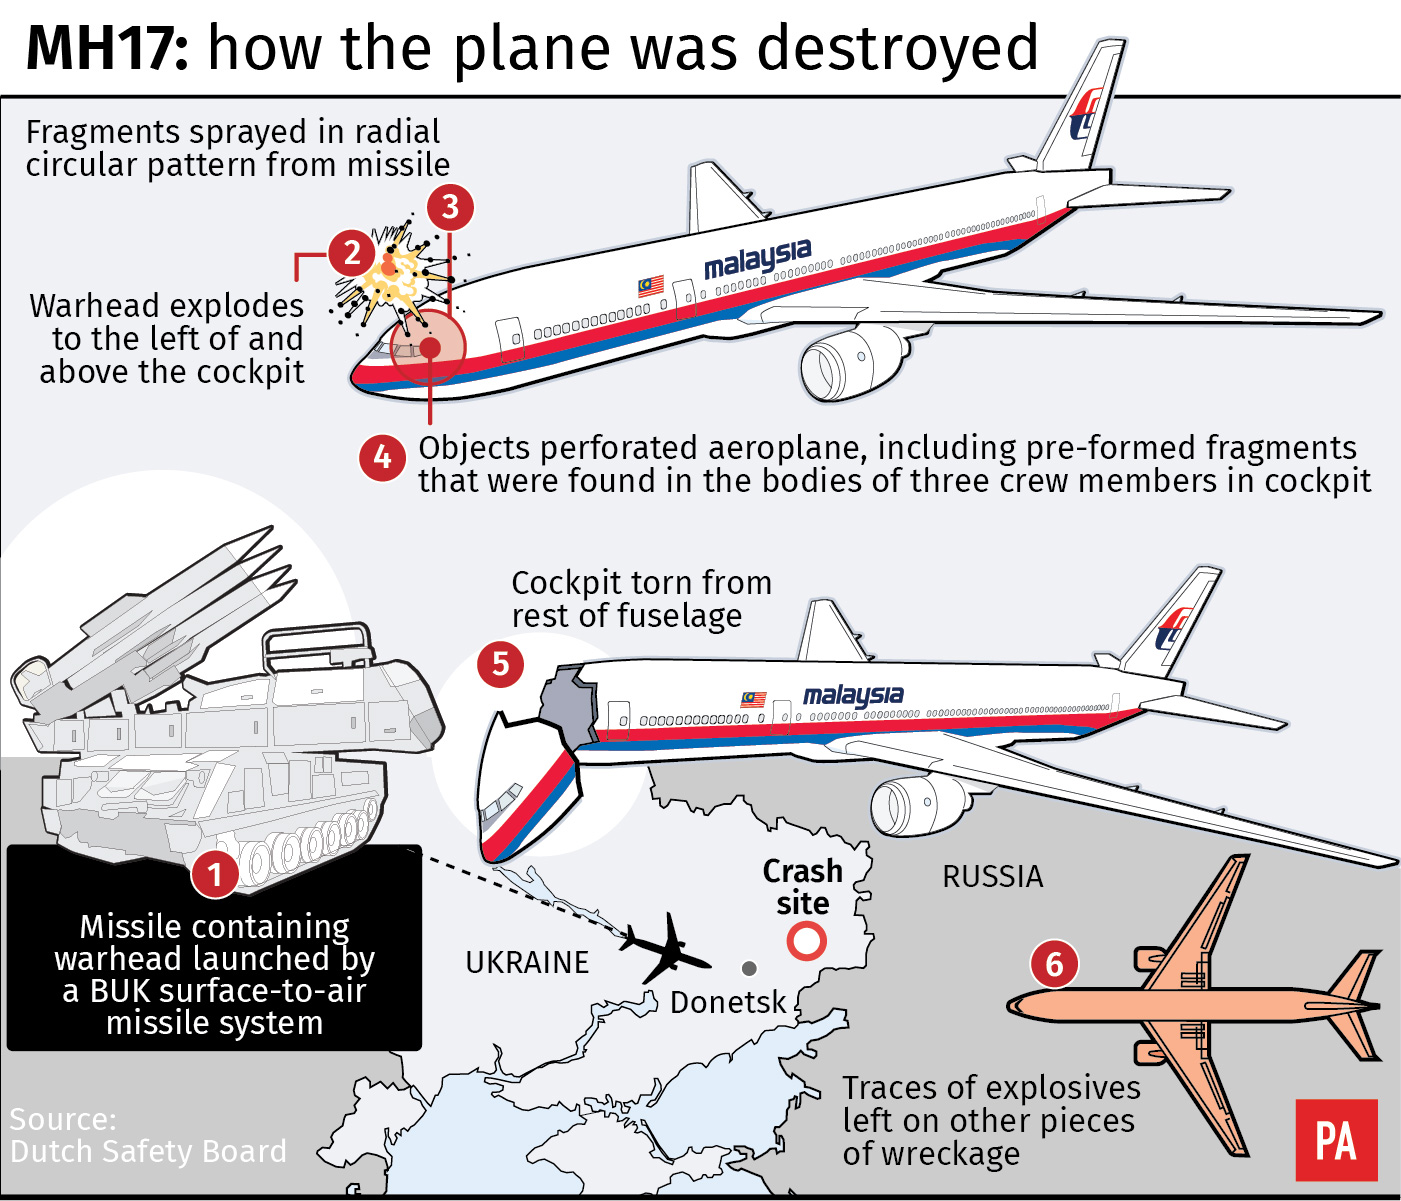 Flight MH17 